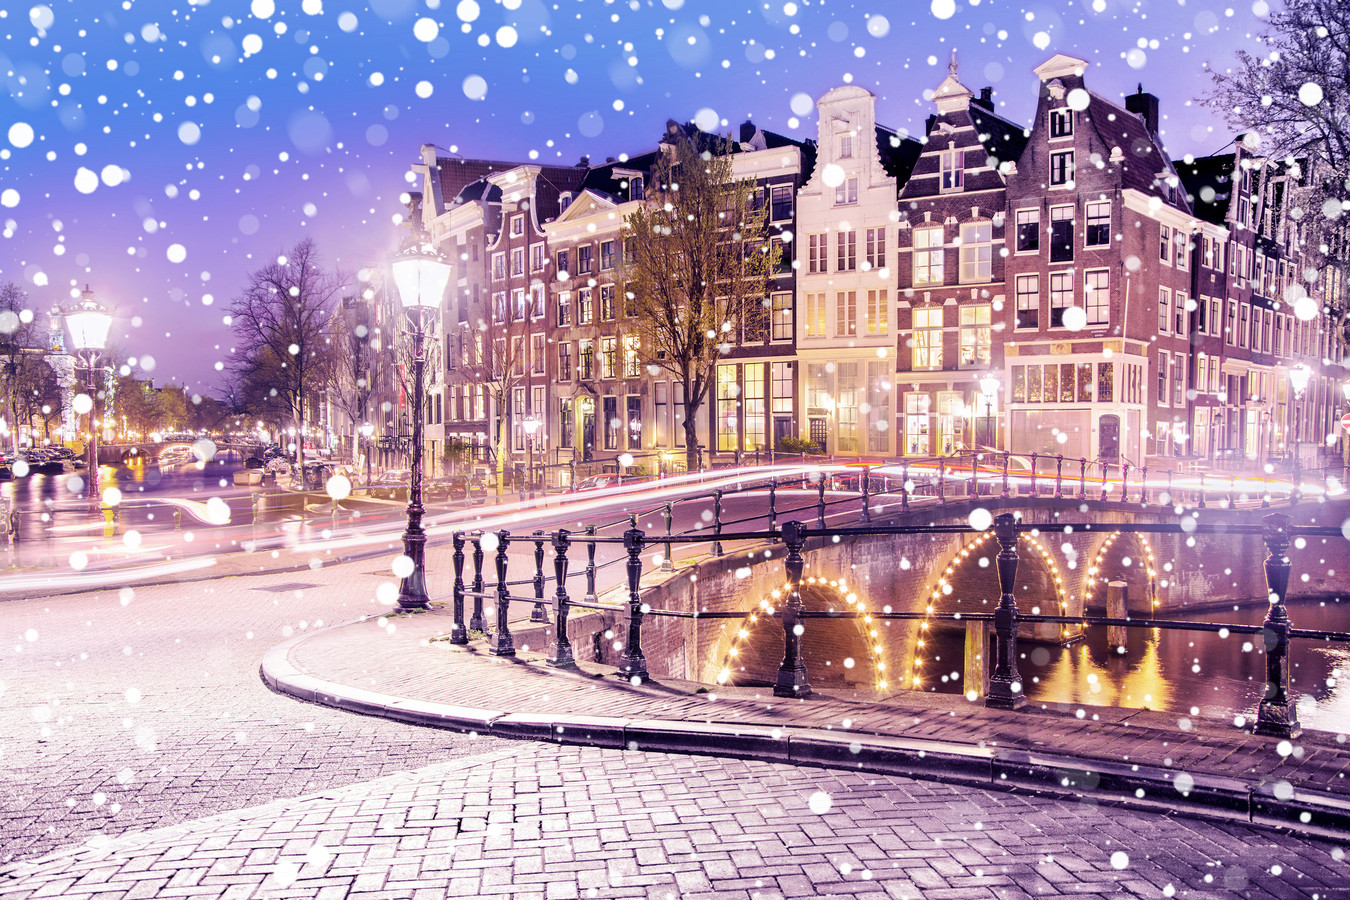 Reserveren energie Ontslag nemen Kunnen we voortaan fluiten naar een witte kerst? | Foto | AD.nl